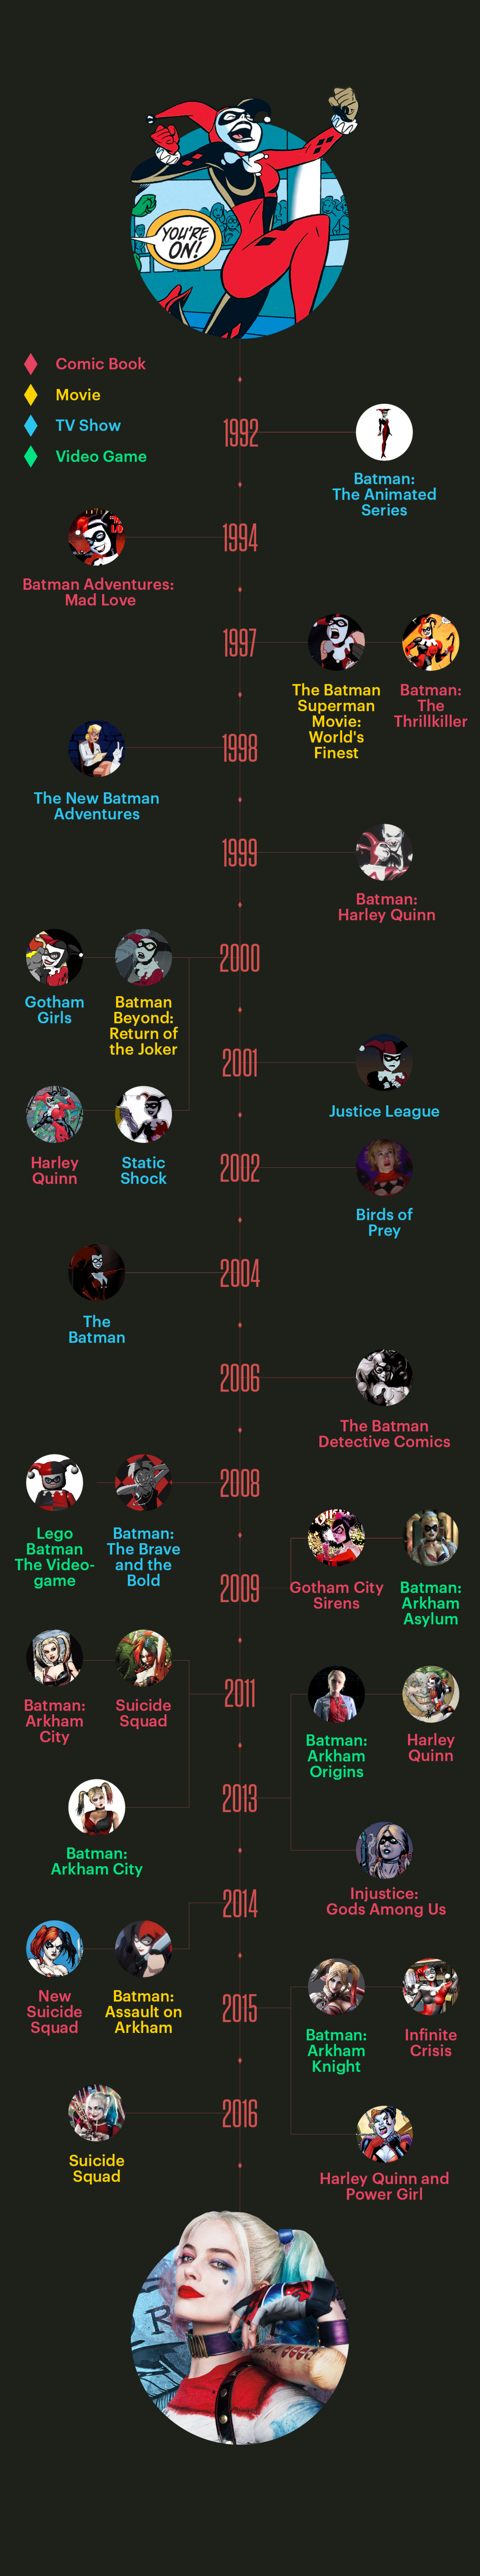 Harley Quinn Suicide Squad Timeline